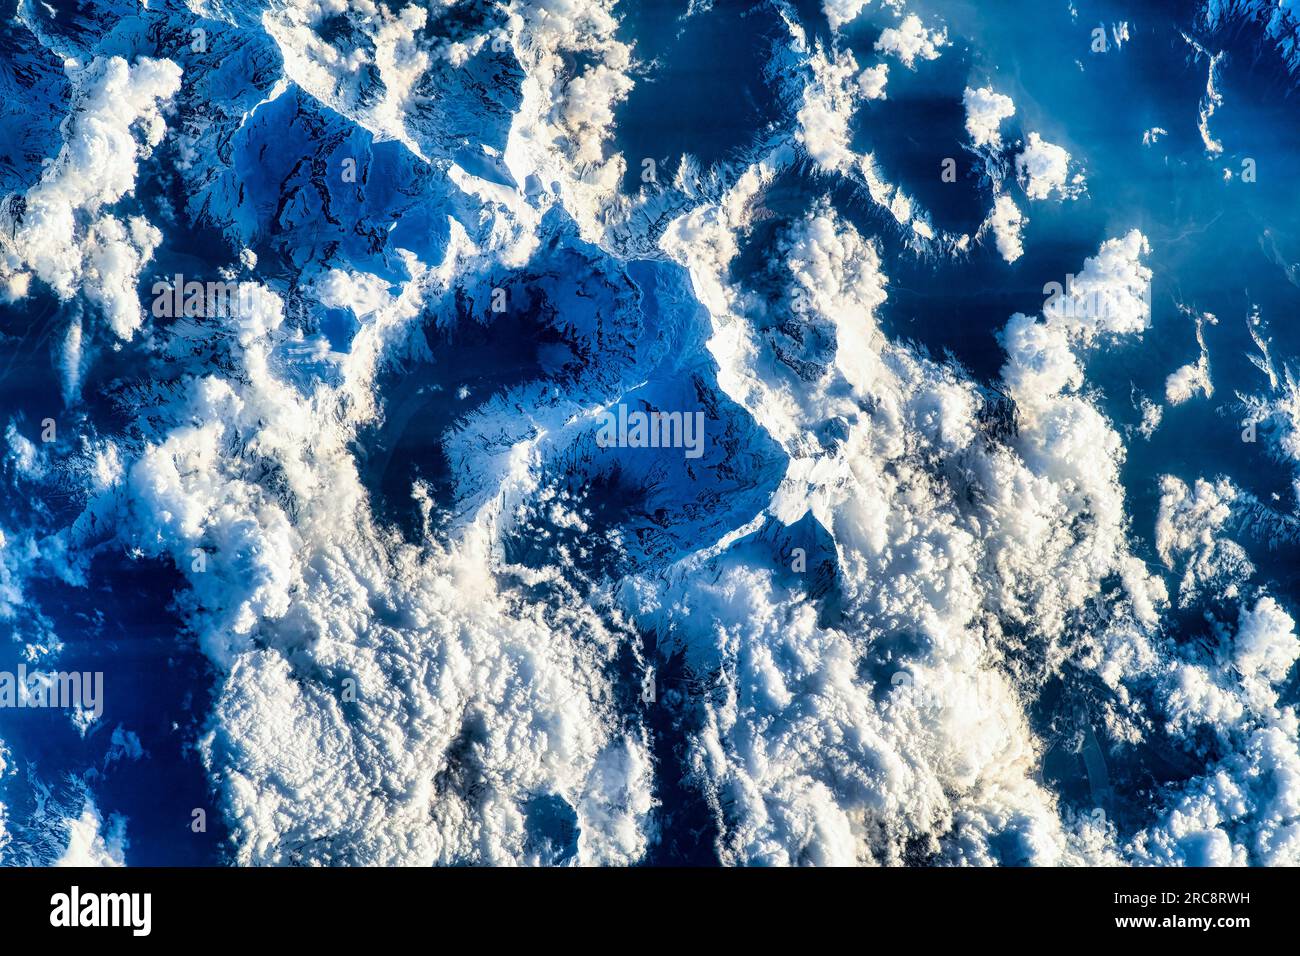 Nuvole e montagne innevate della catena montuosa dell'Himalaya. Immagine della NASA. Linee guida per l'uso dei supporti: https://www.nasa.gov/multimedia/guidelines/ind Foto Stock